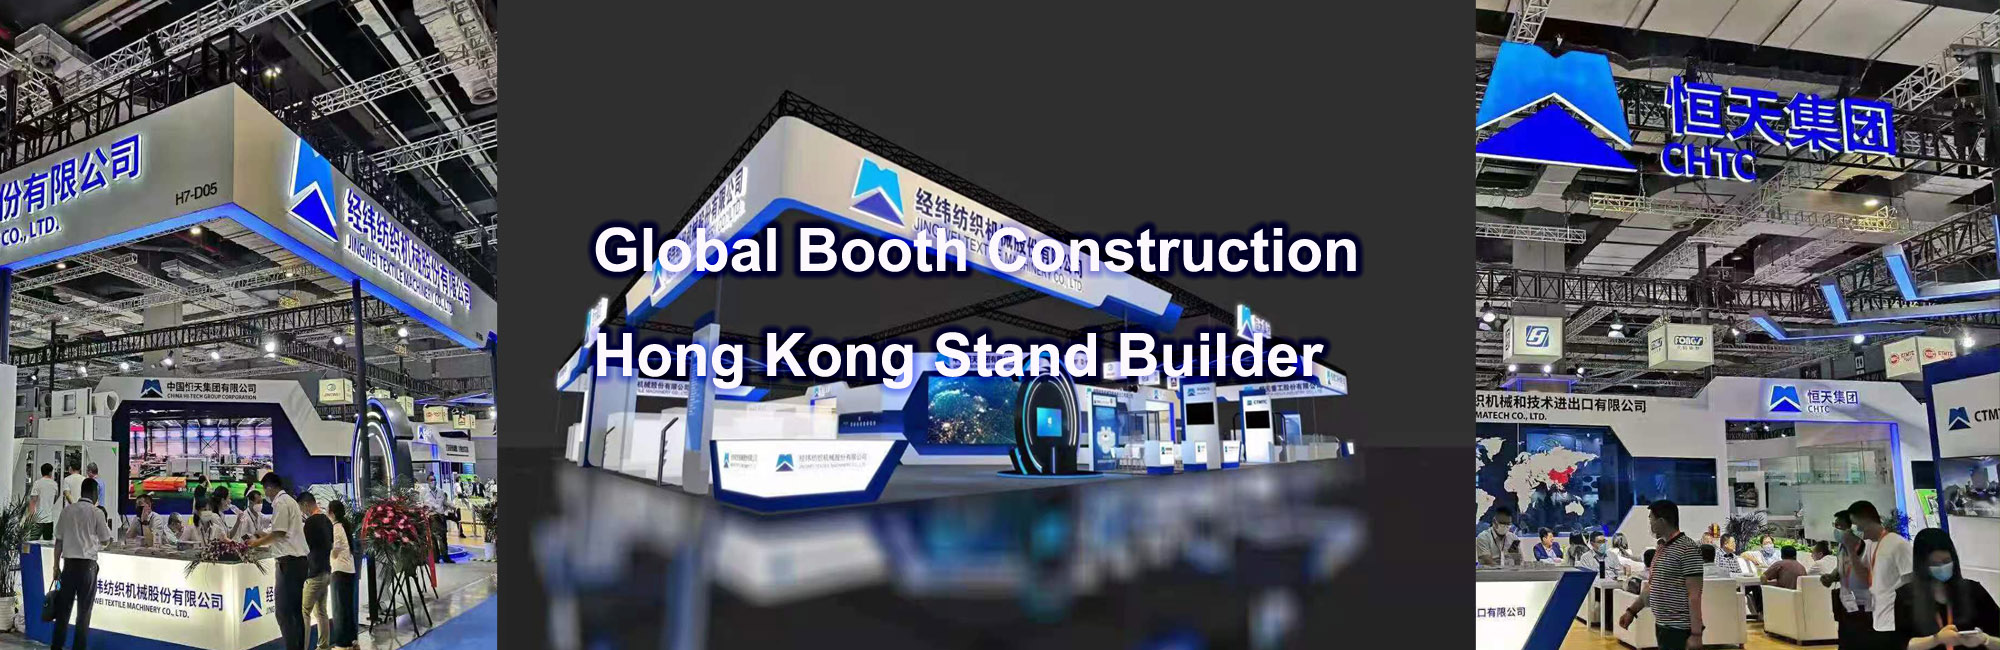 hong kong trade show stand builder